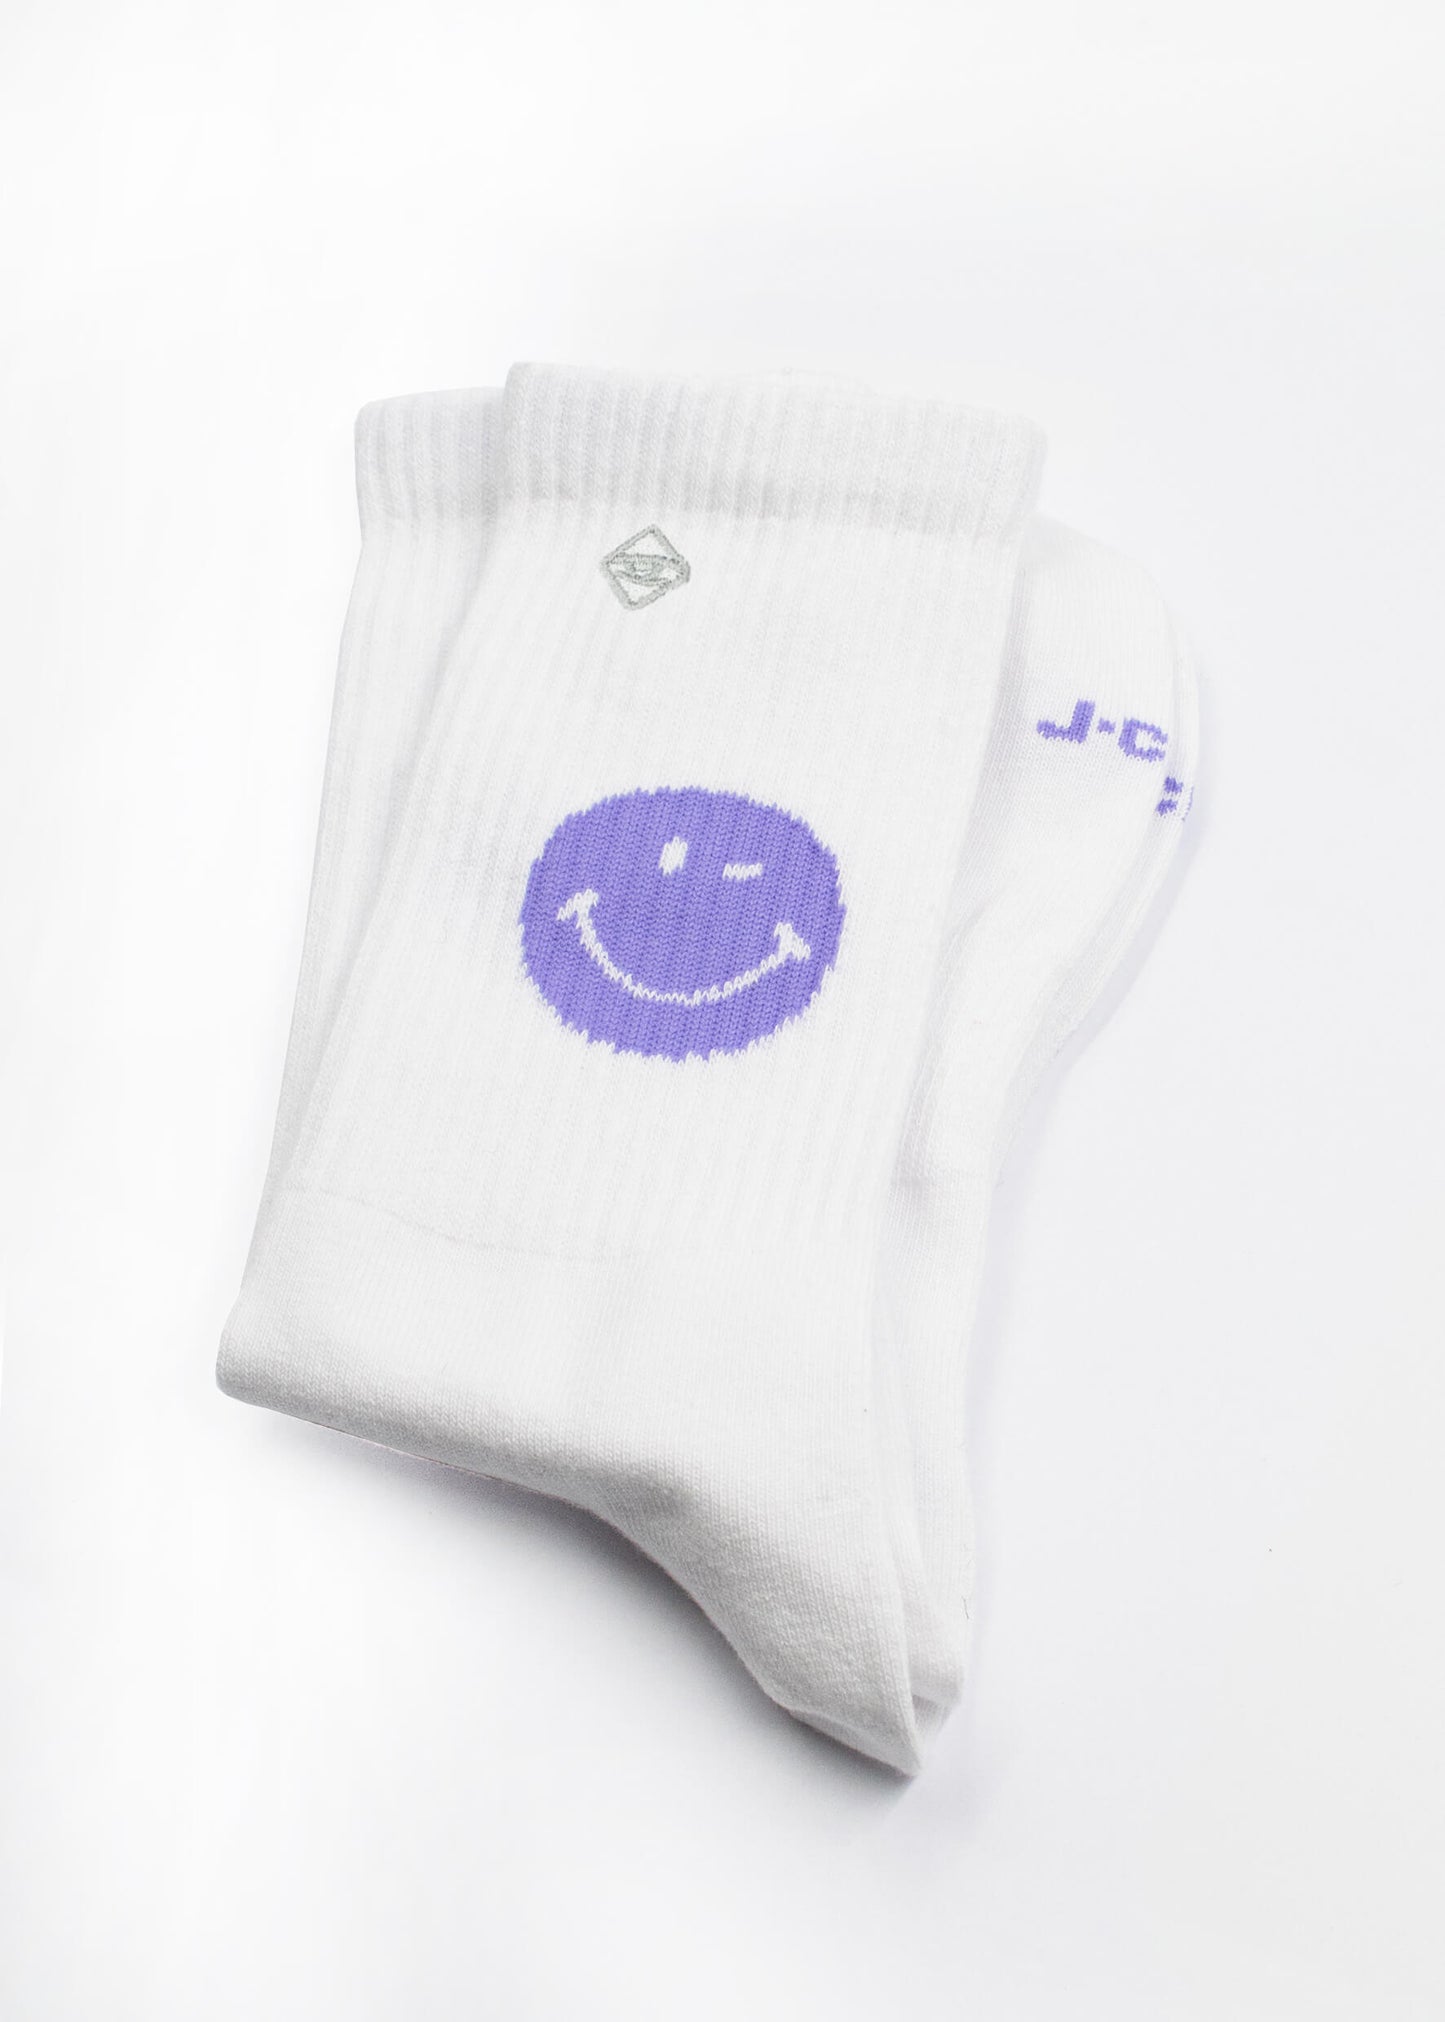 Weisse Socken mit Smiley Motiv